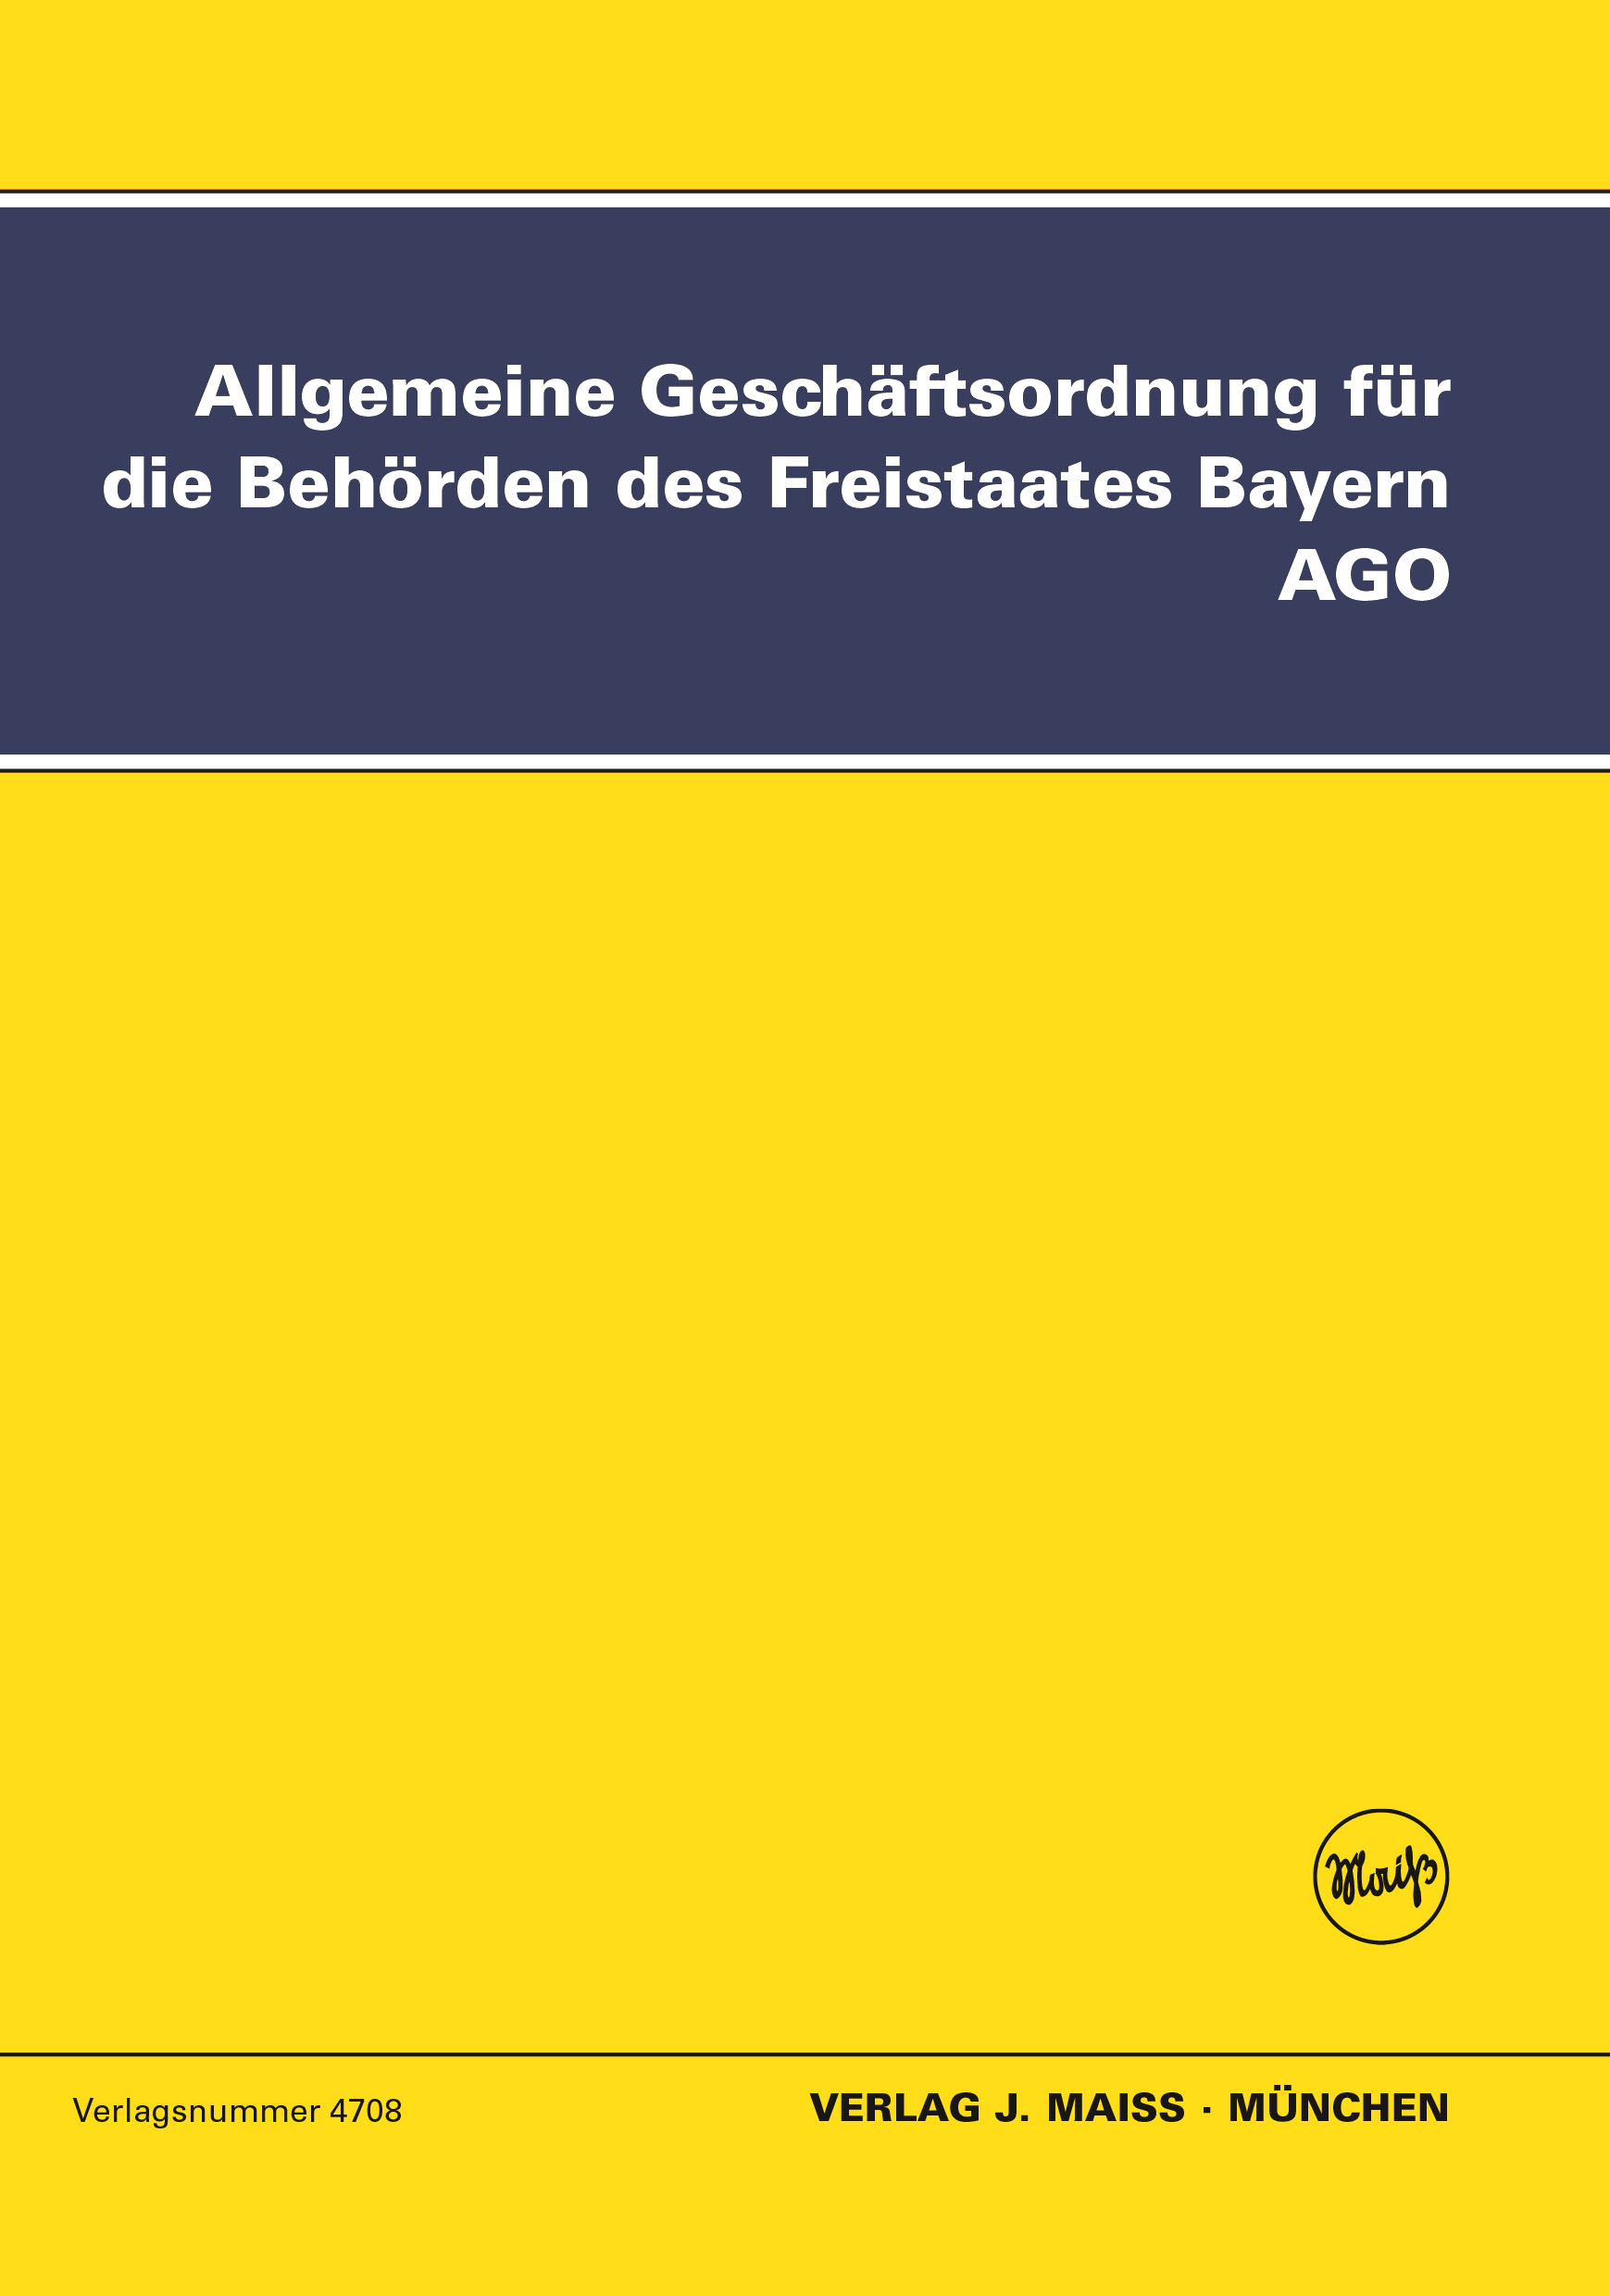 Allgemeine Geschäftsordnung für die Behörden des Freistaates Bayern, AGO